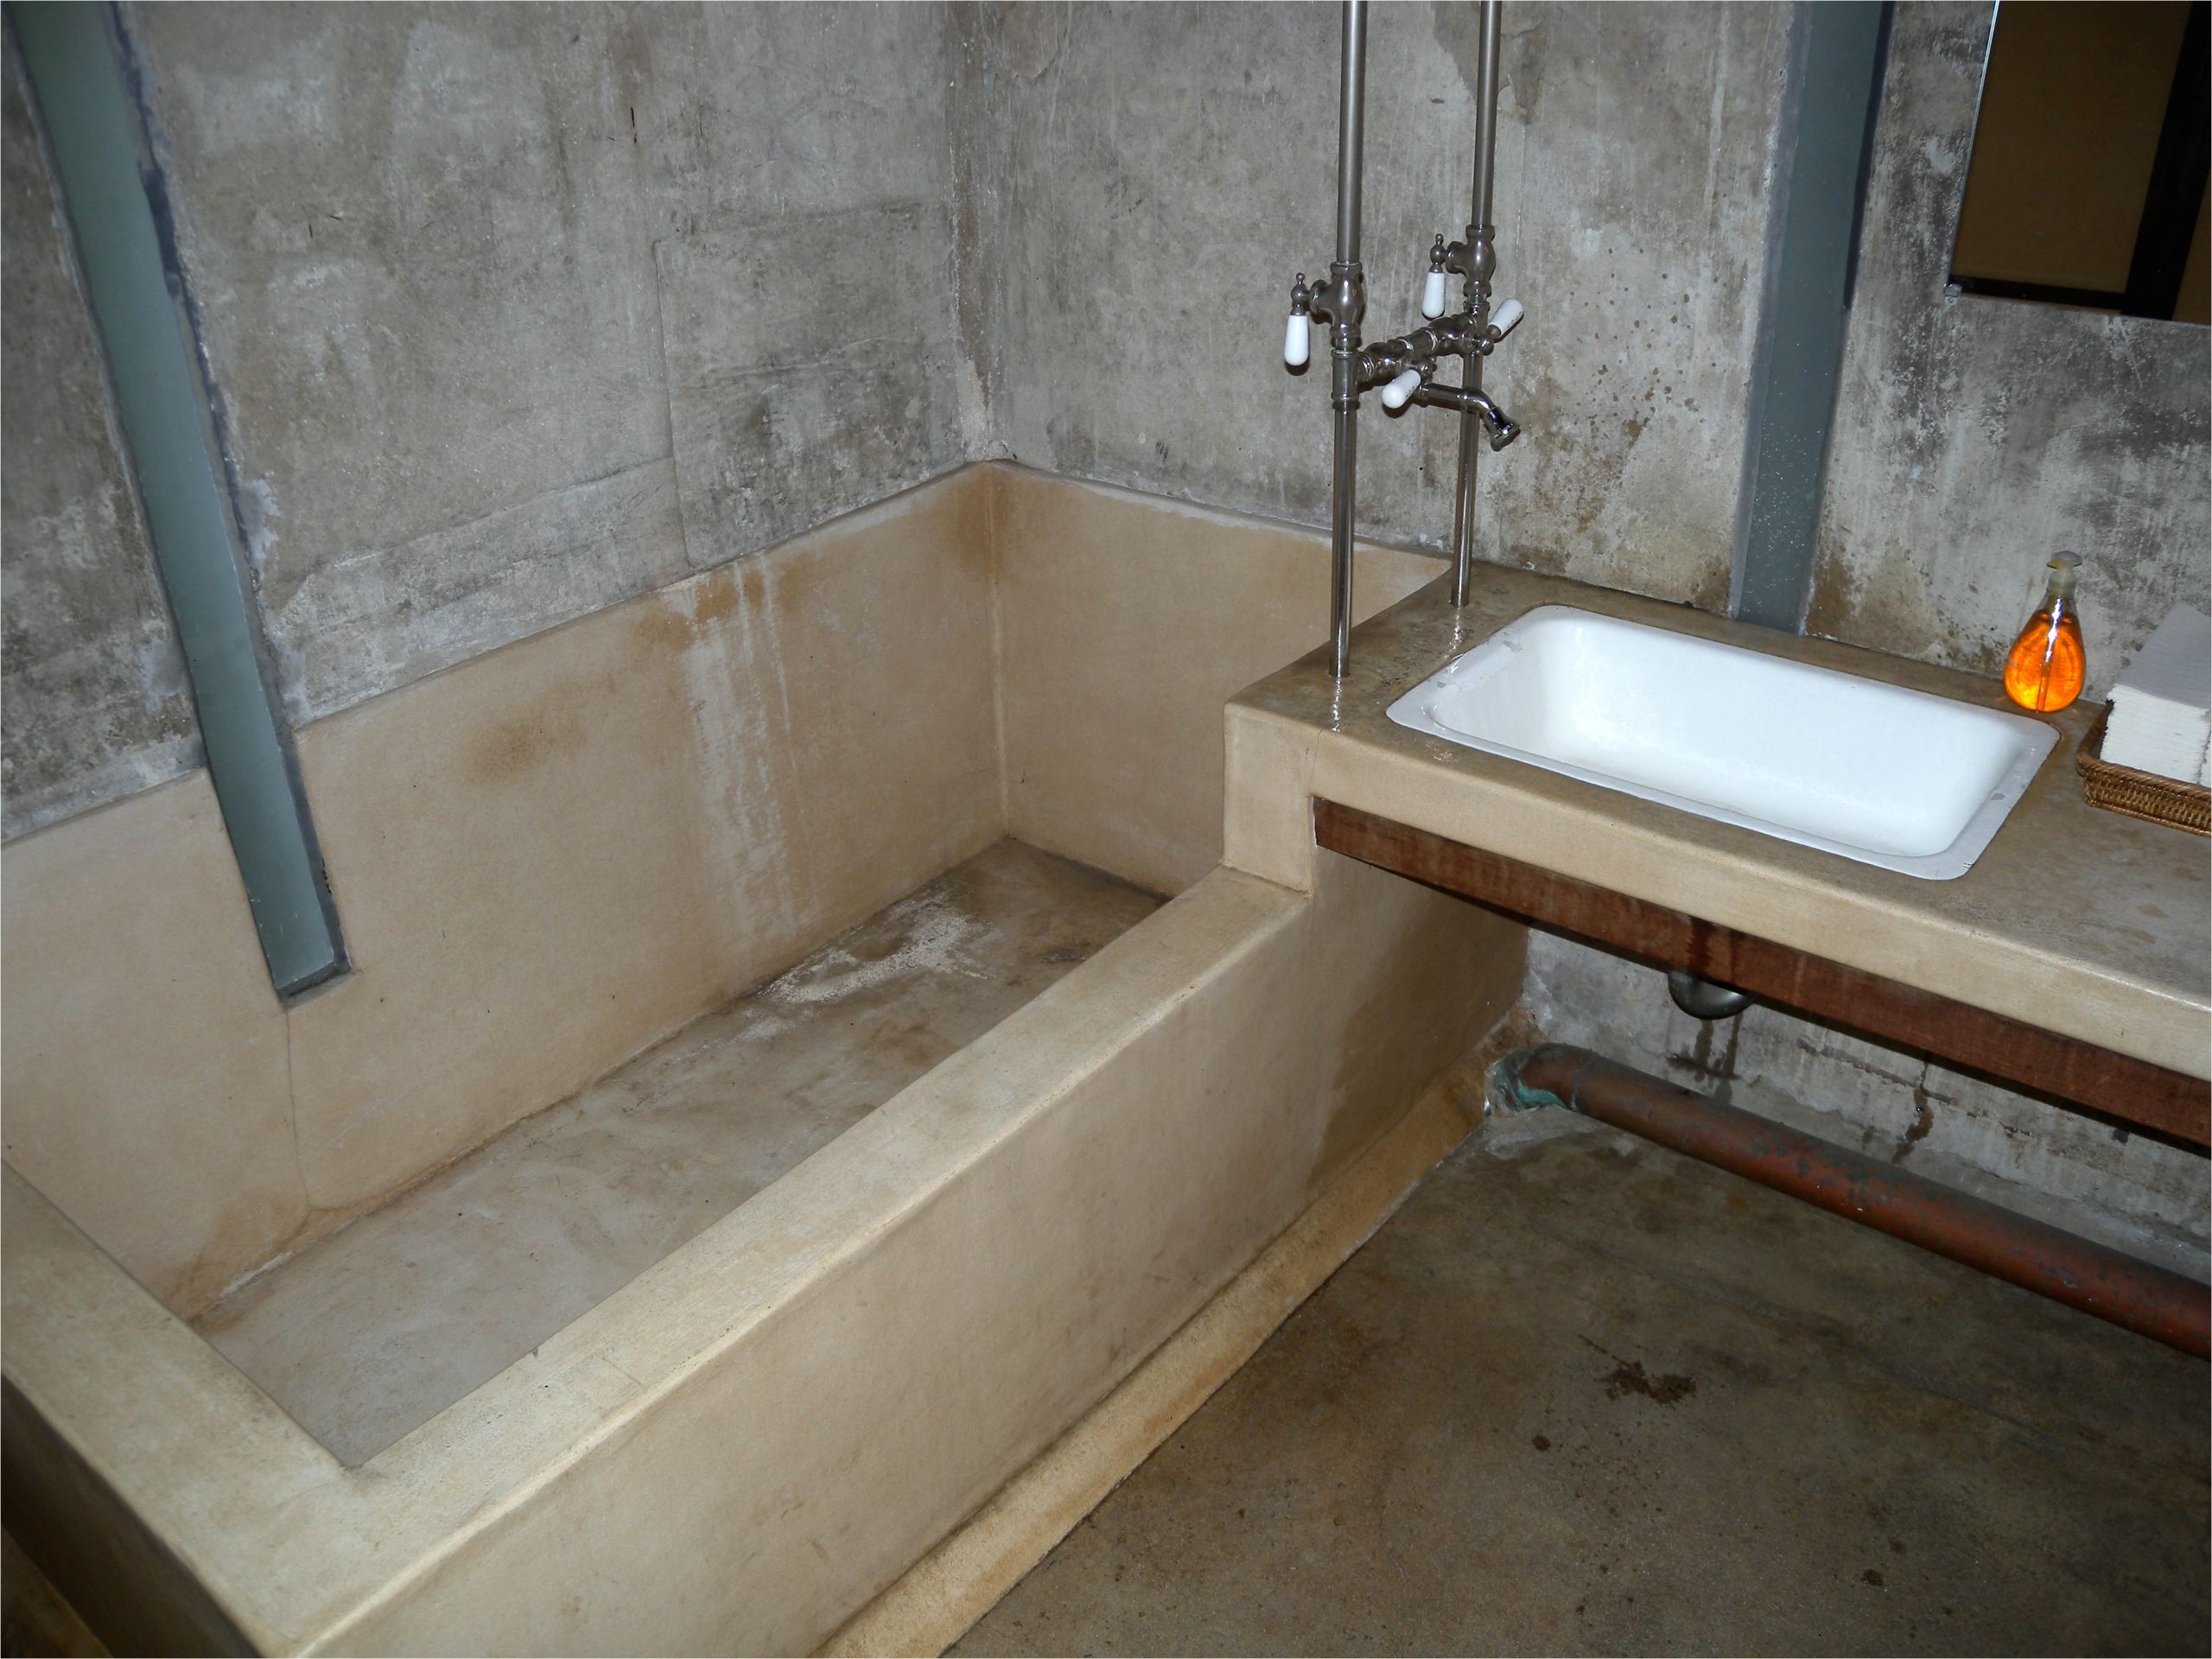 Concrete Bathtub Designs How to Move A Bathtub Drain In Concrete